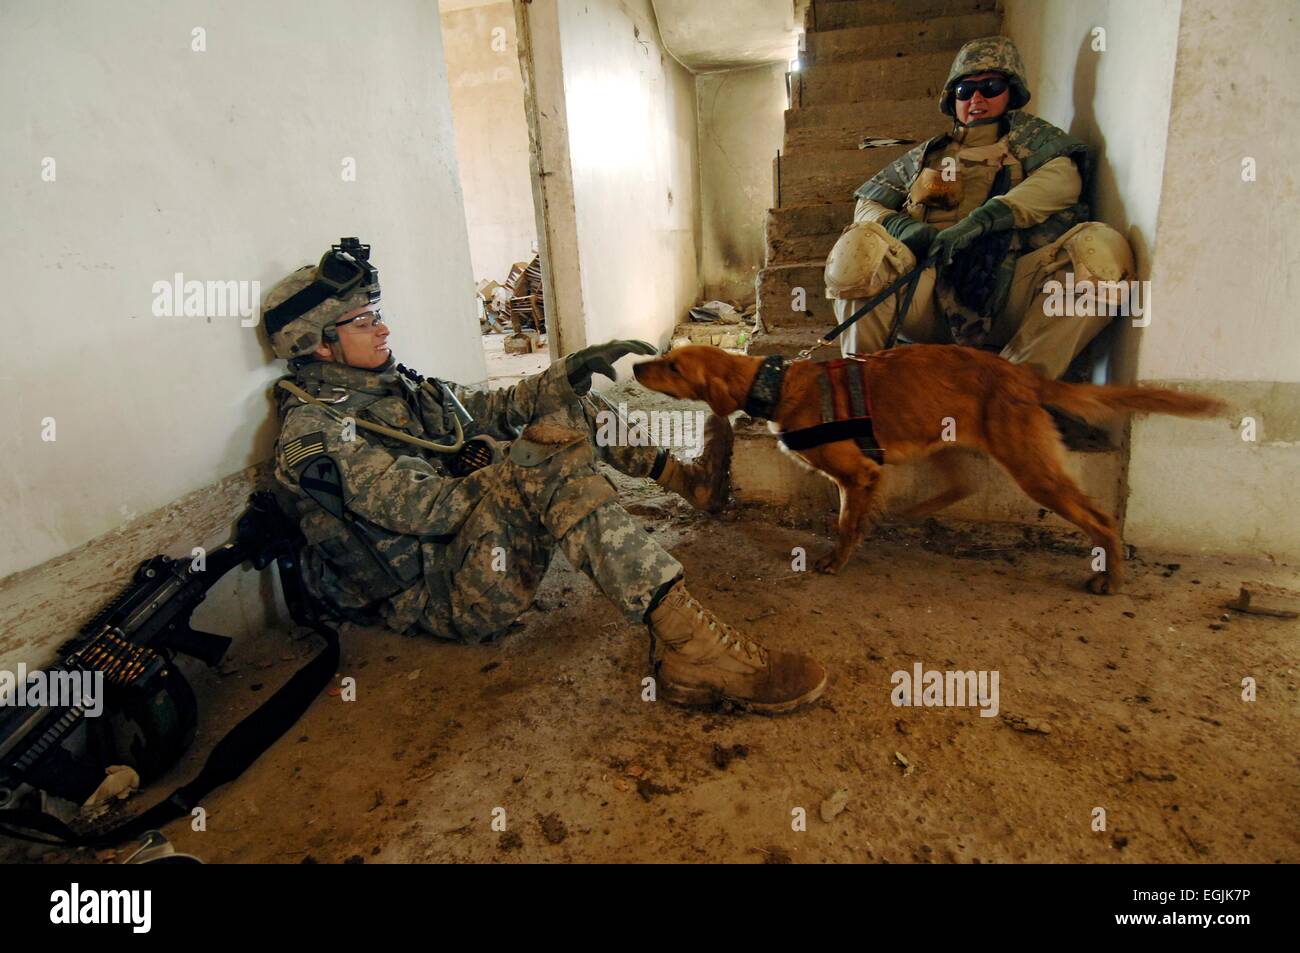 Les soldats américains de la 1ère Division de cavalerie jouer avec Recon, un cadavre de chien de détection, comme elle et son chien attendent leur tour pour rechercher les restes d'un soldat disparu le 23 février 2007 à Bagdad, Iraq. Banque D'Images